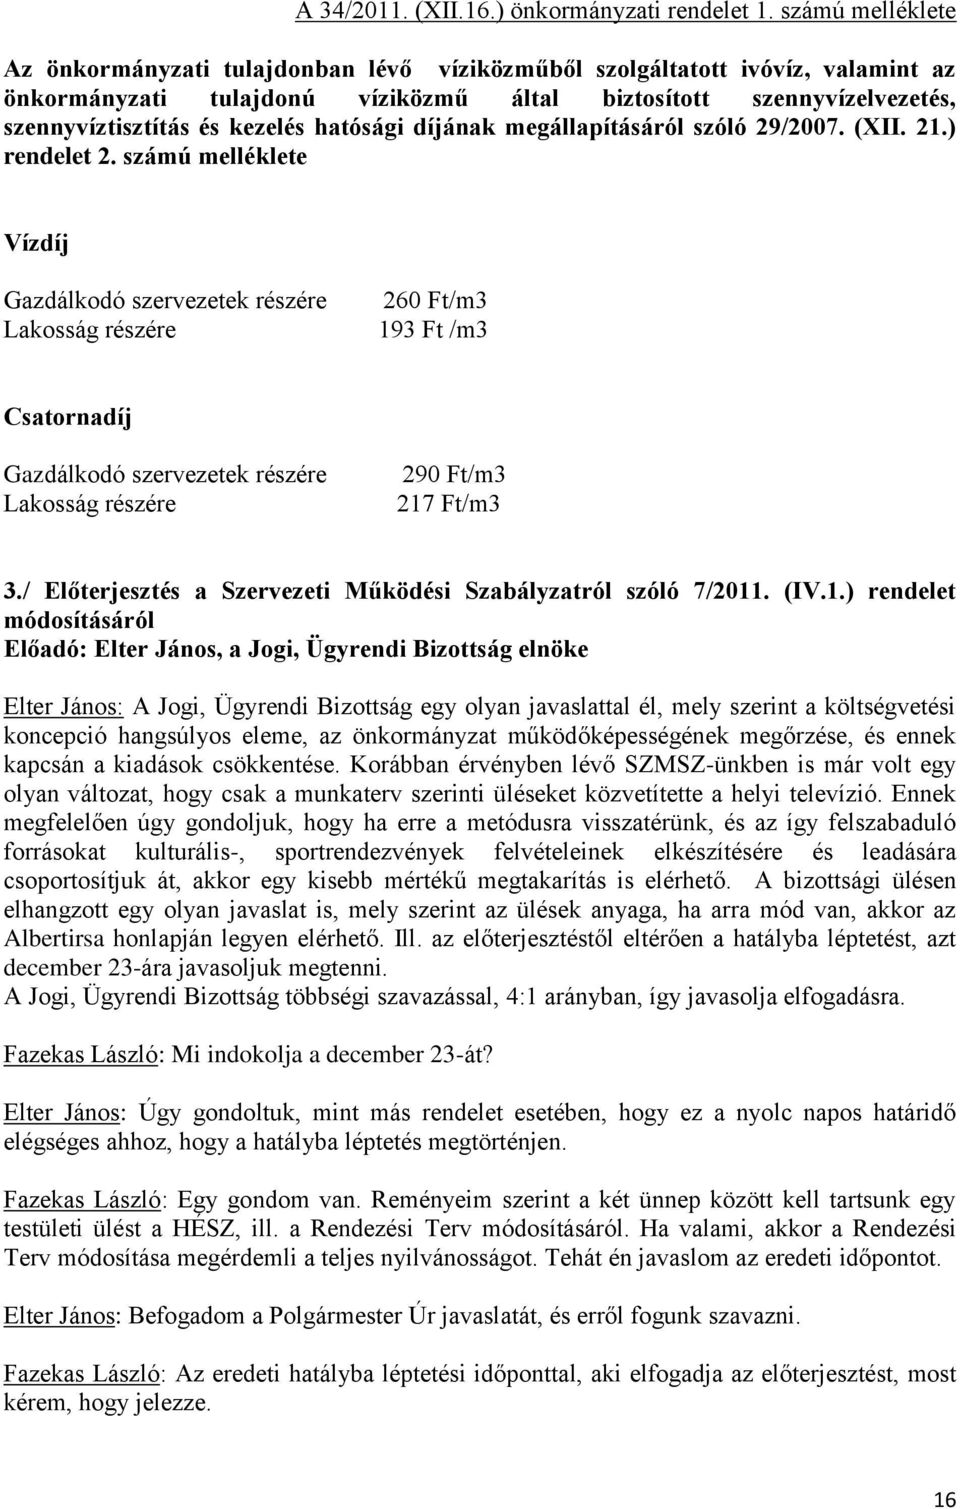 hatósági díjának megállapításáról szóló 29/2007. (XII. 21.) rendelet 2.